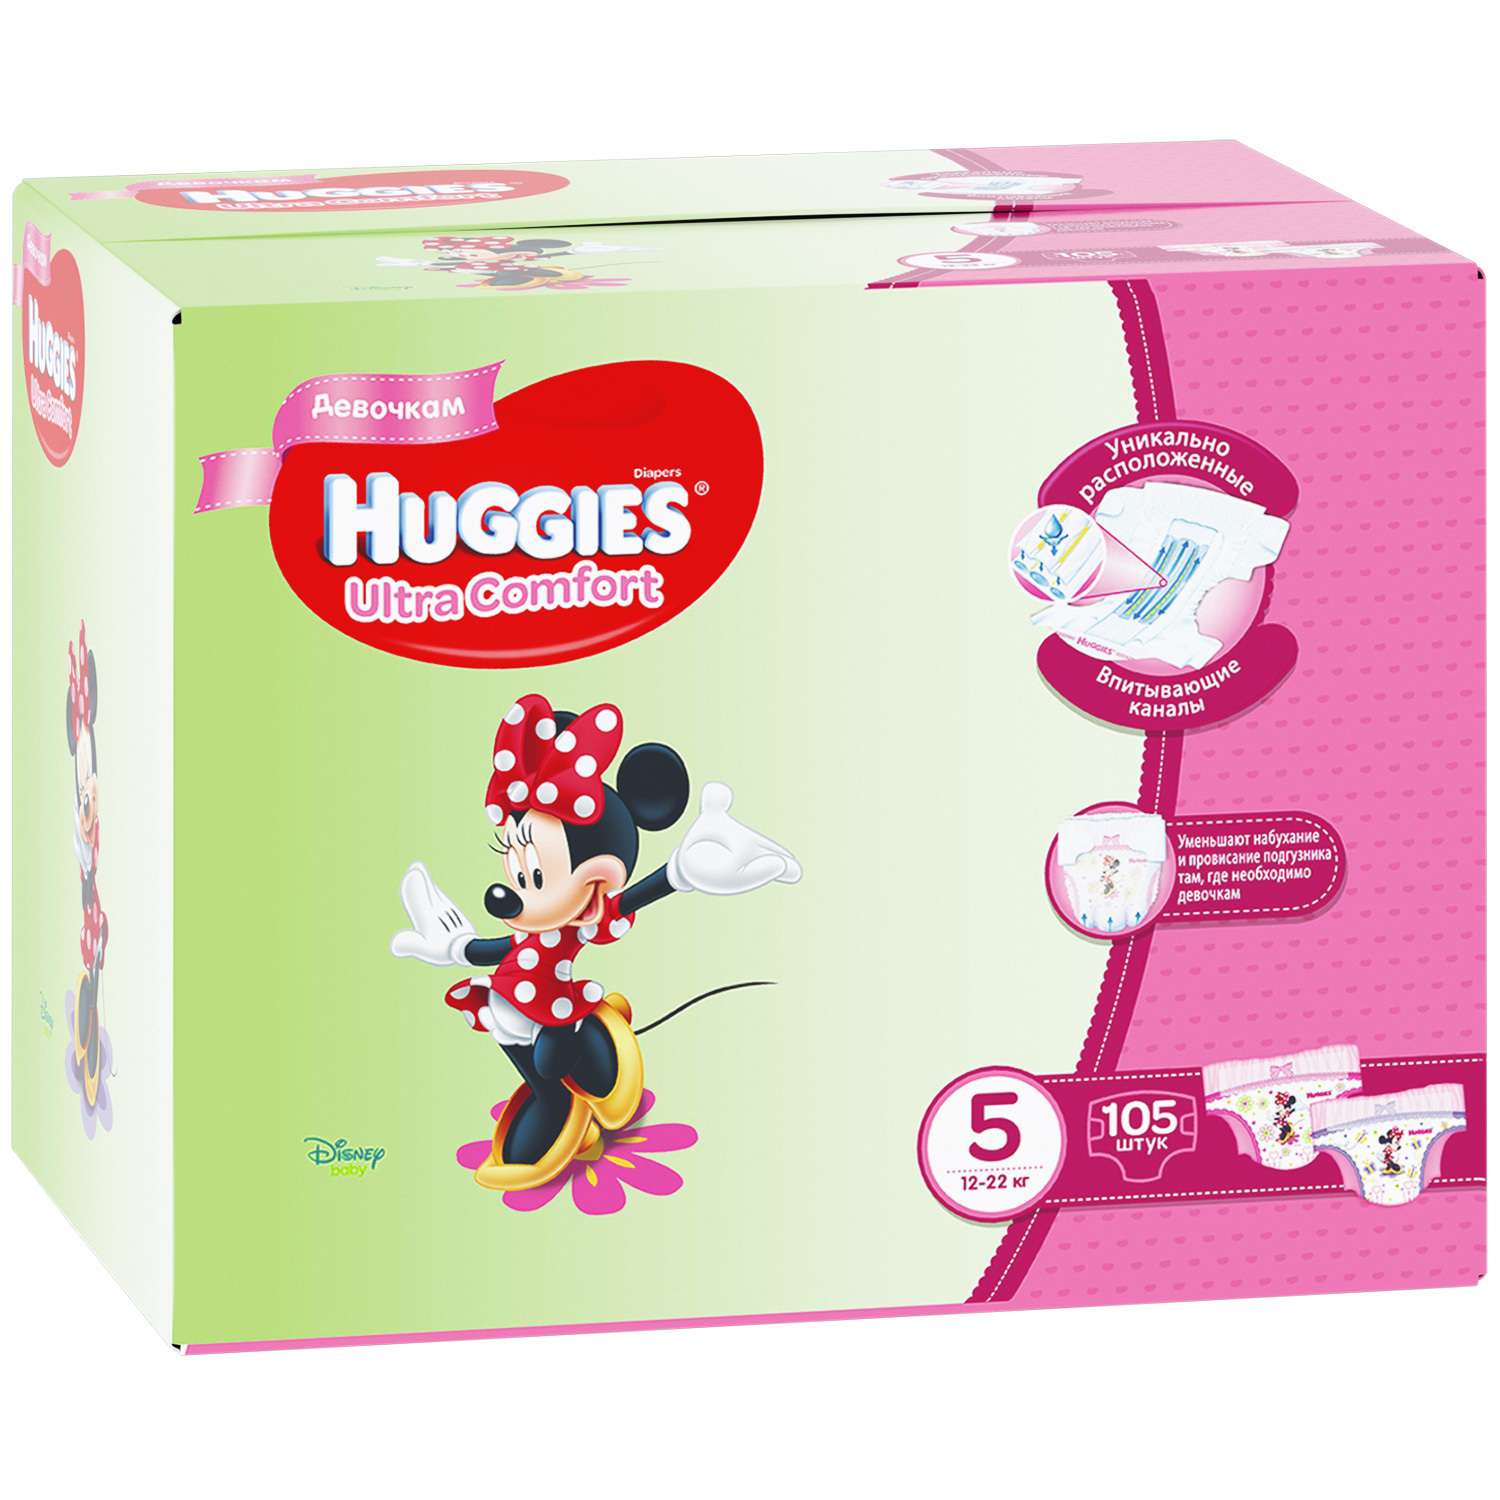 Подгузники для девочек Huggies Ultra Comfort Disney 5 12-22кг 105шт - фото 3